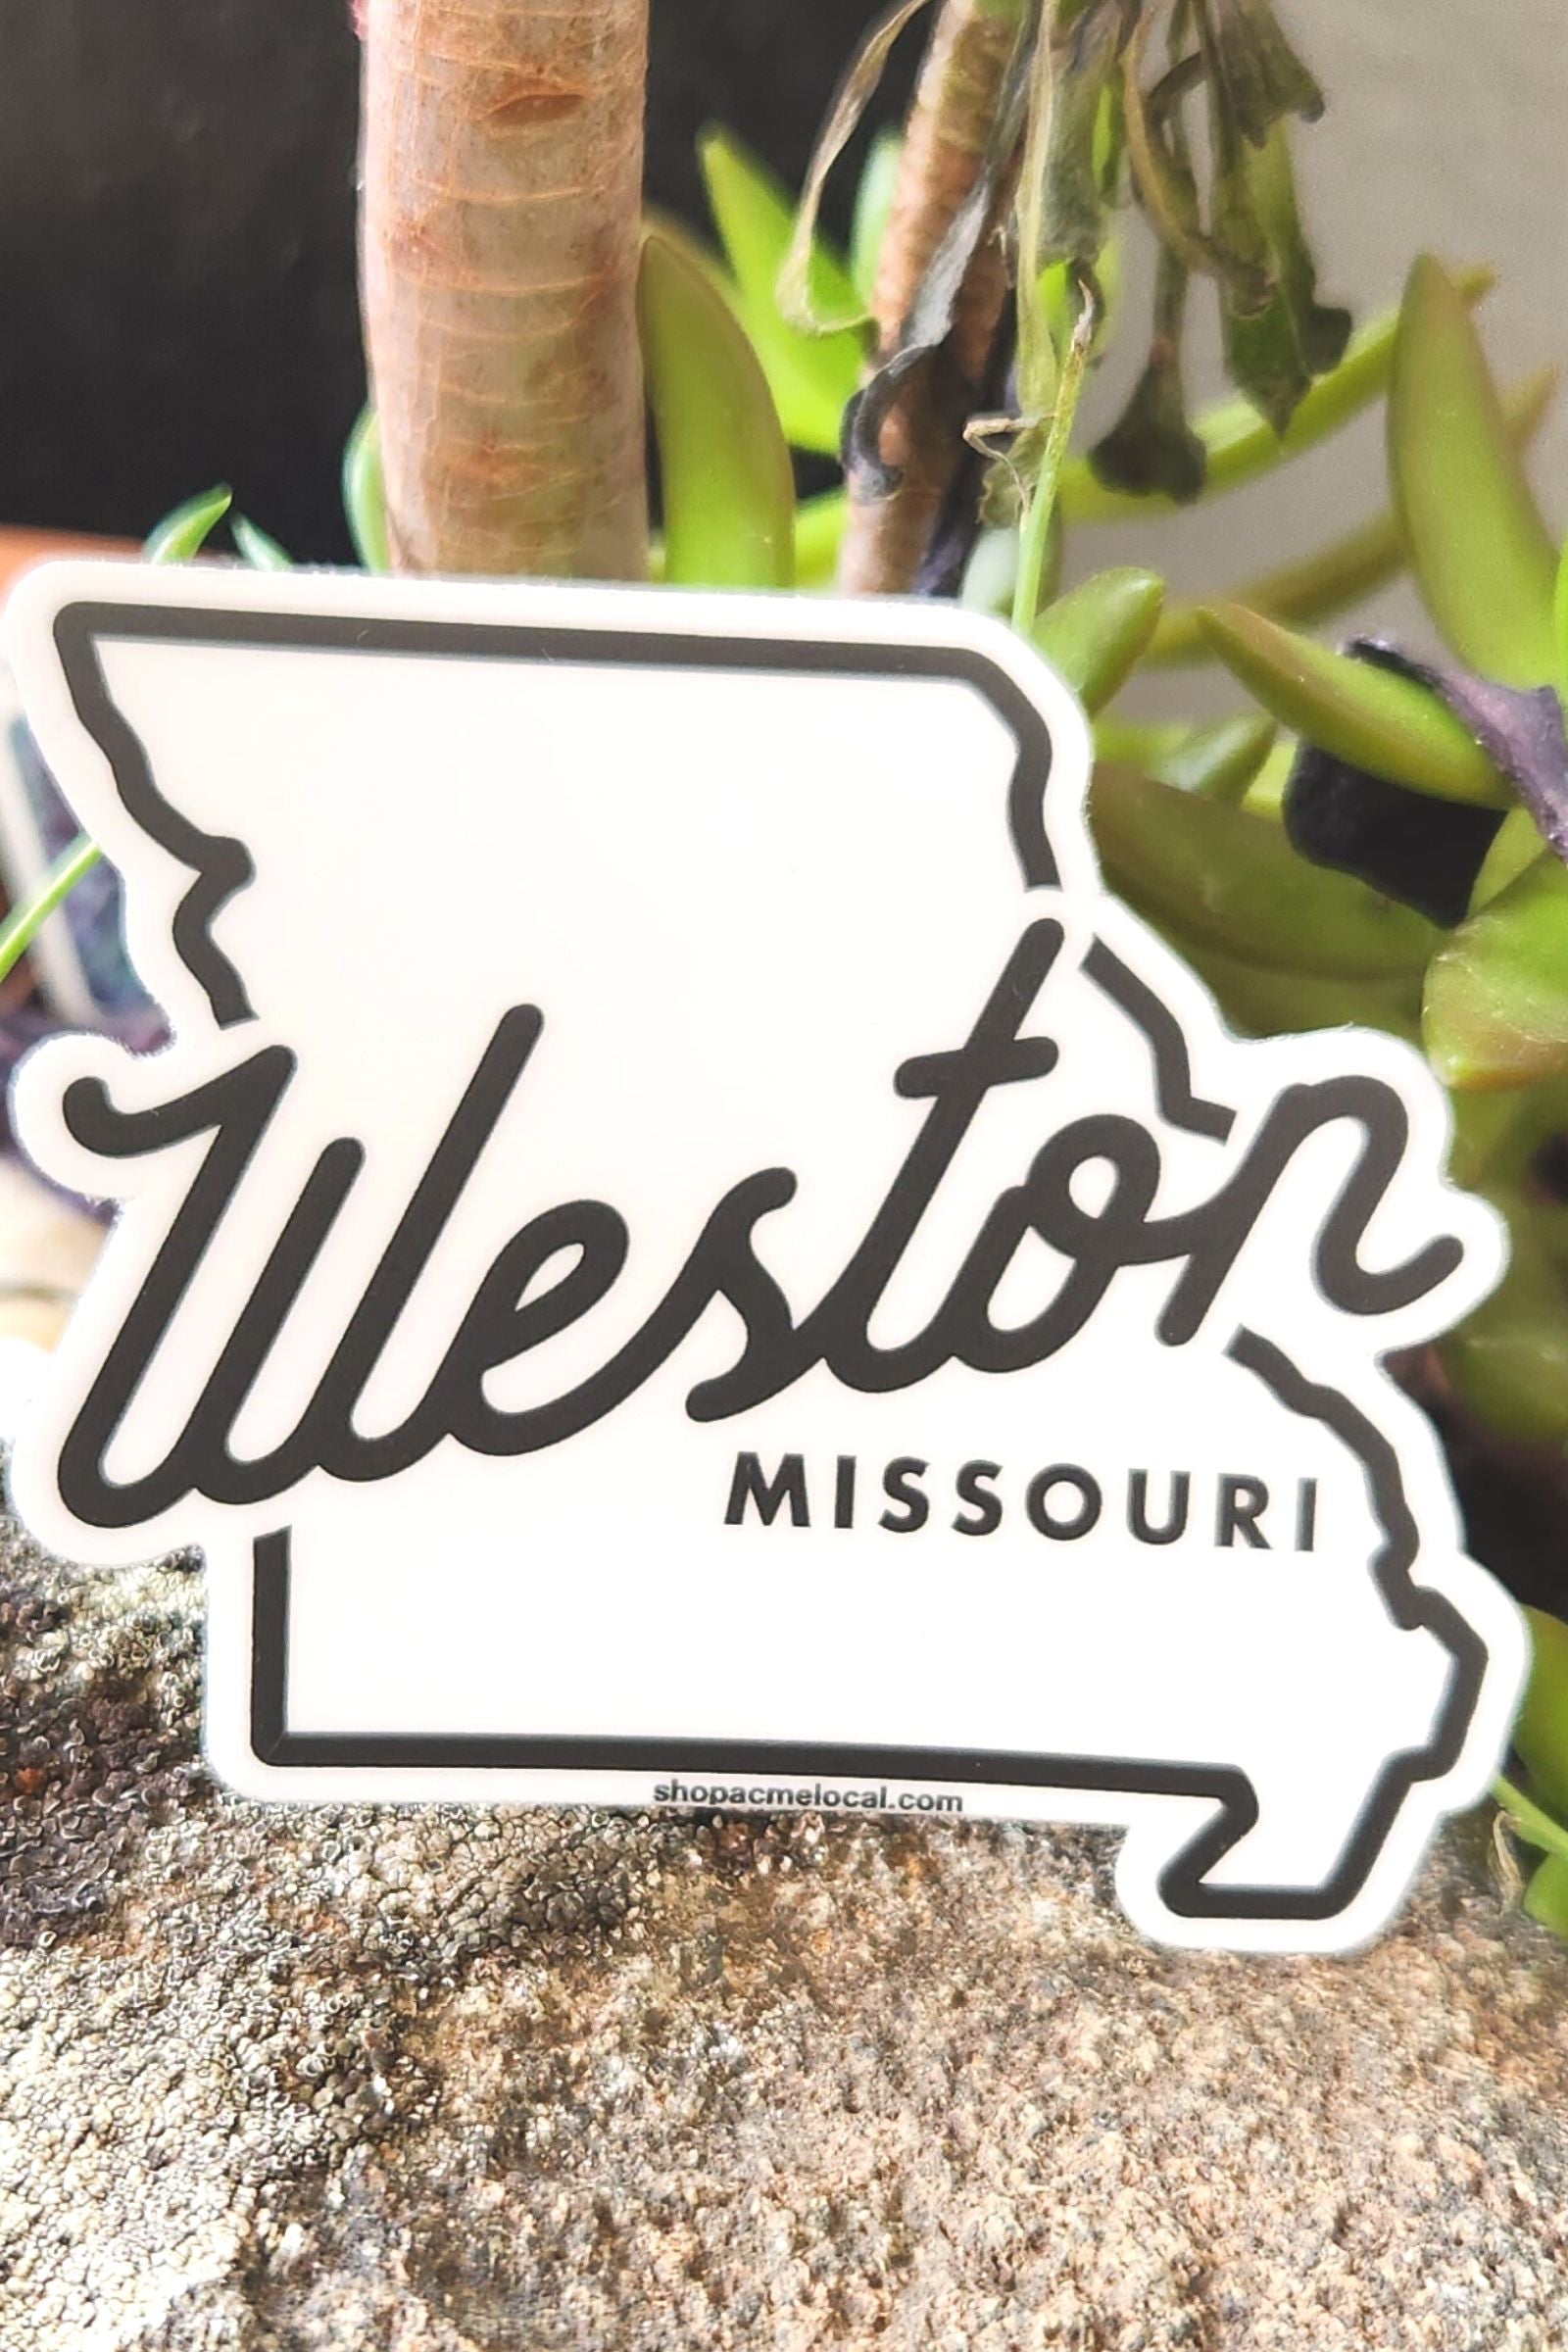 White Weston Missouri State Sticker